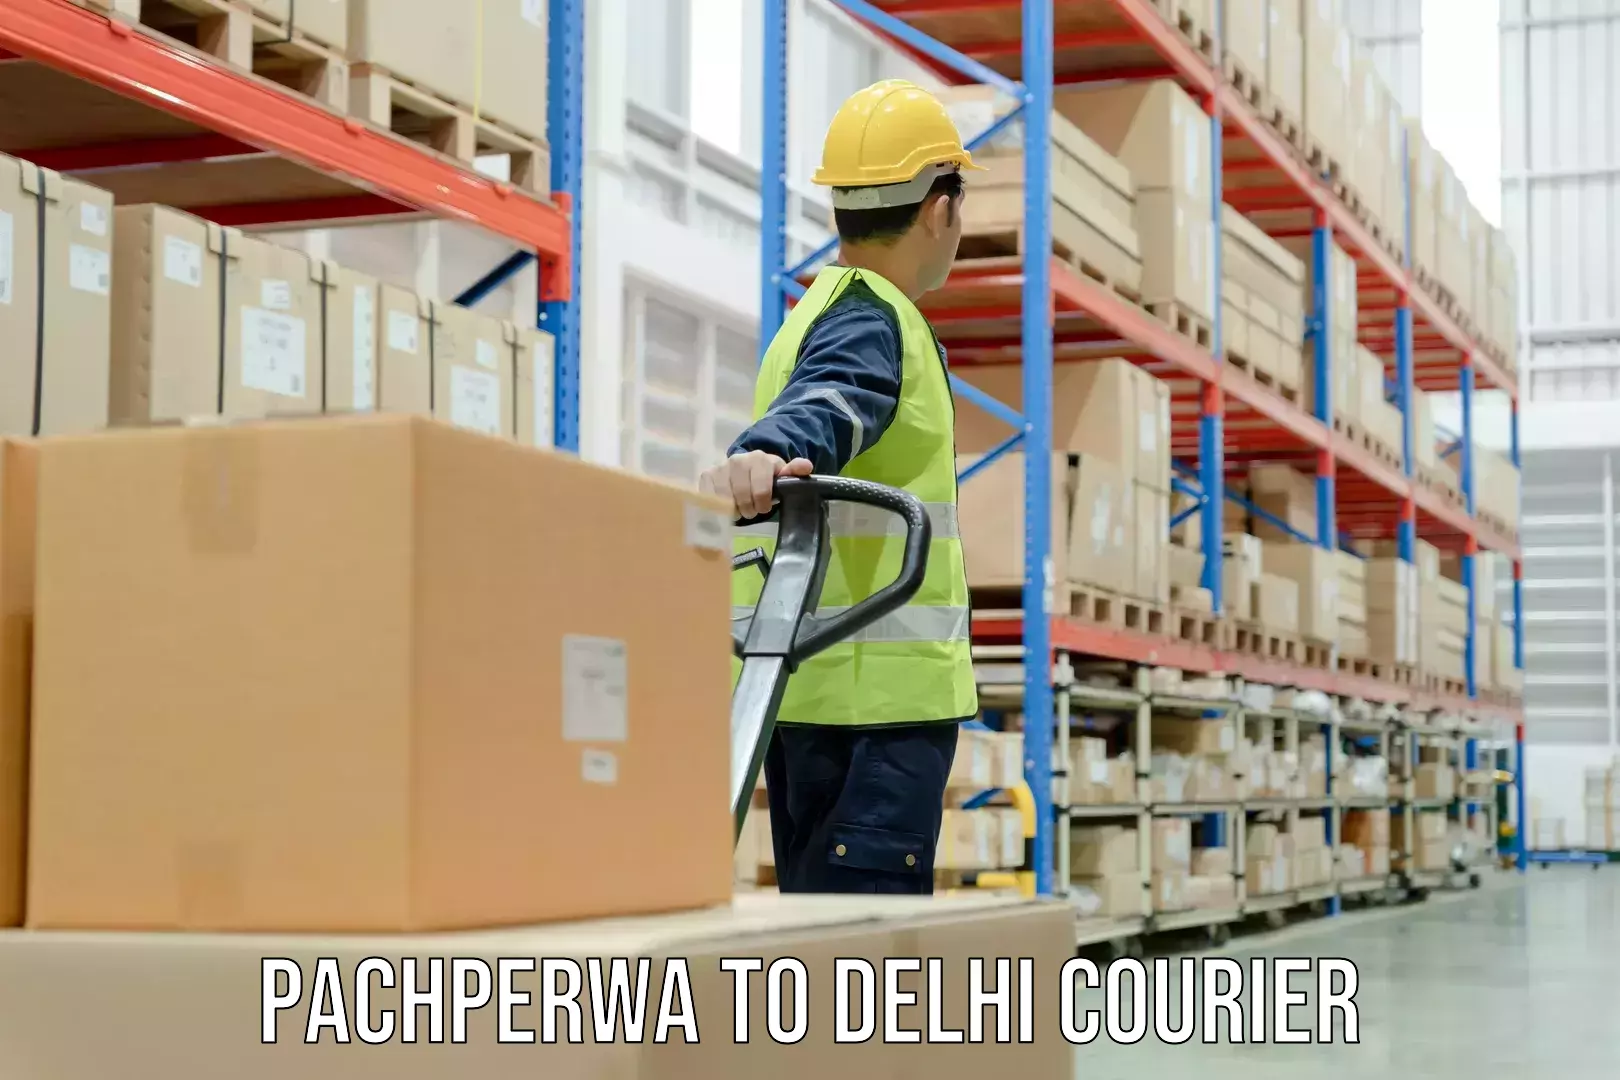 Express courier capabilities in Pachperwa to Jawaharlal Nehru University New Delhi